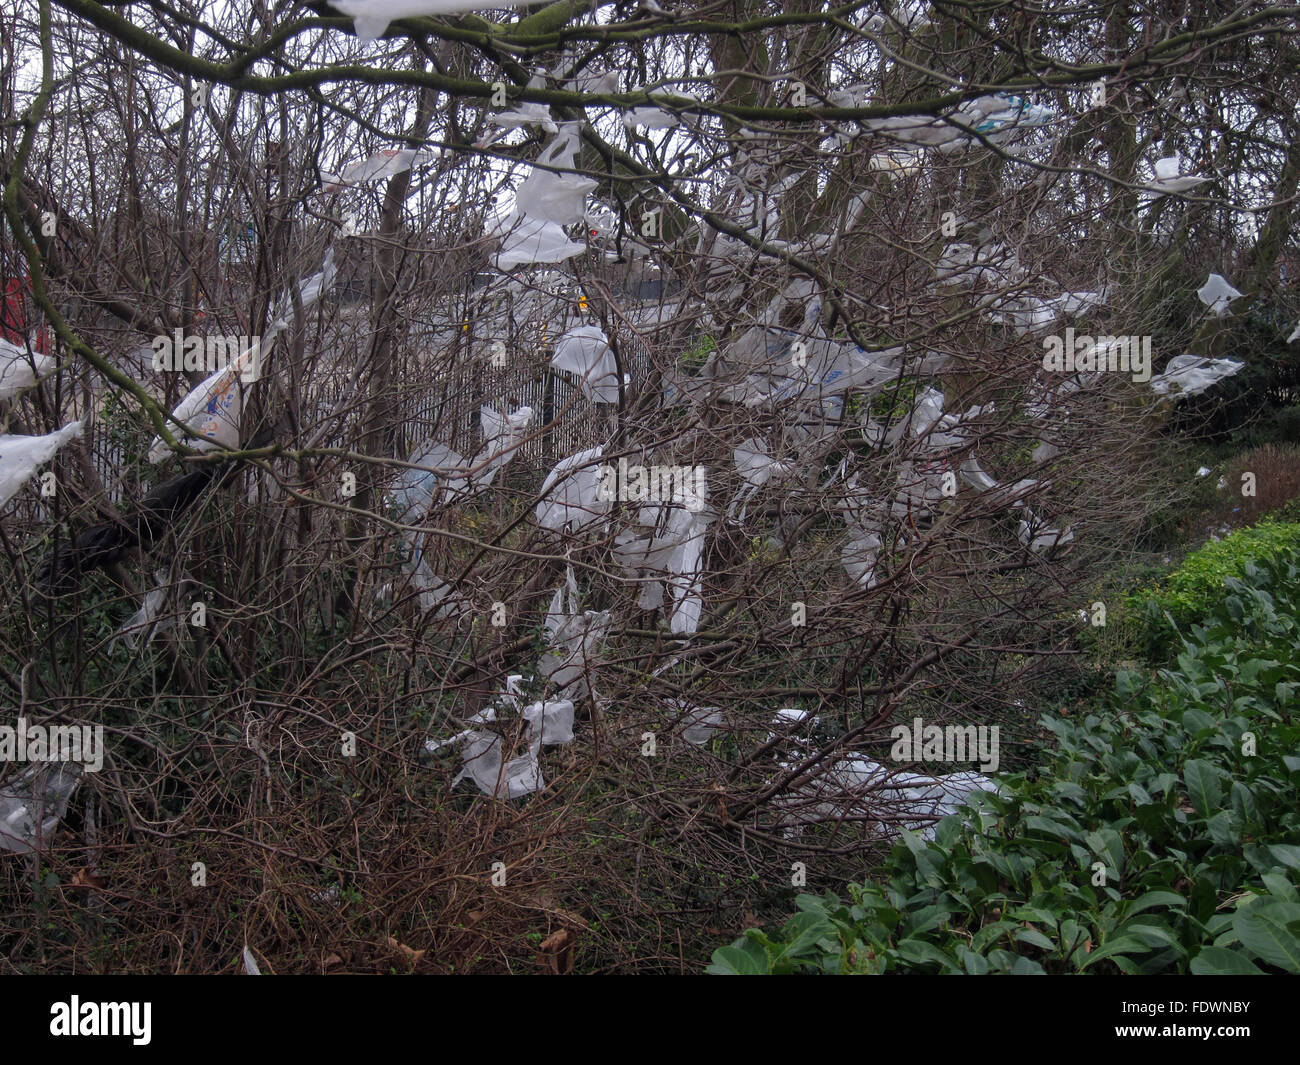 Tesco sacchetti di plastica bloccata in posizione nella struttura ad albero al di fuori di entrata a Tesco Foto Stock